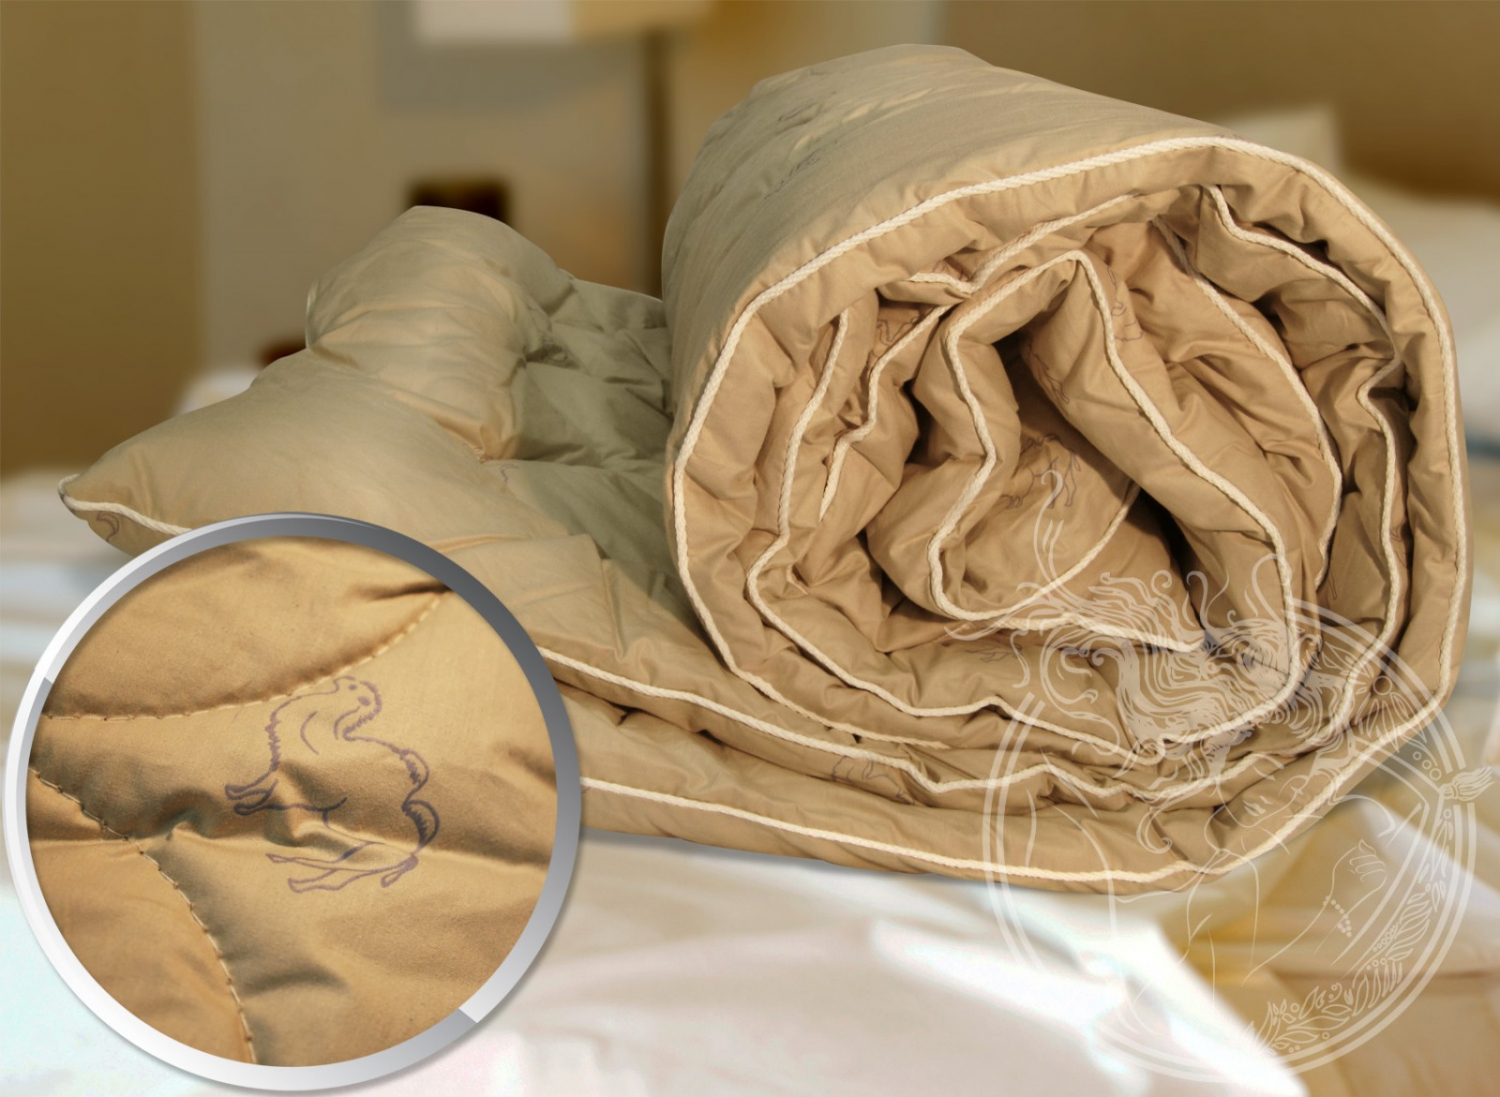 Как правильно постирать ватное, шерстяное, пуховое, синтепоновое, бамбуковое, одеяло в стиральной машине? на каком режиме постирать одеяло? можно ли и как стирать одеяло из верблюжьей, овечьей шерсти?